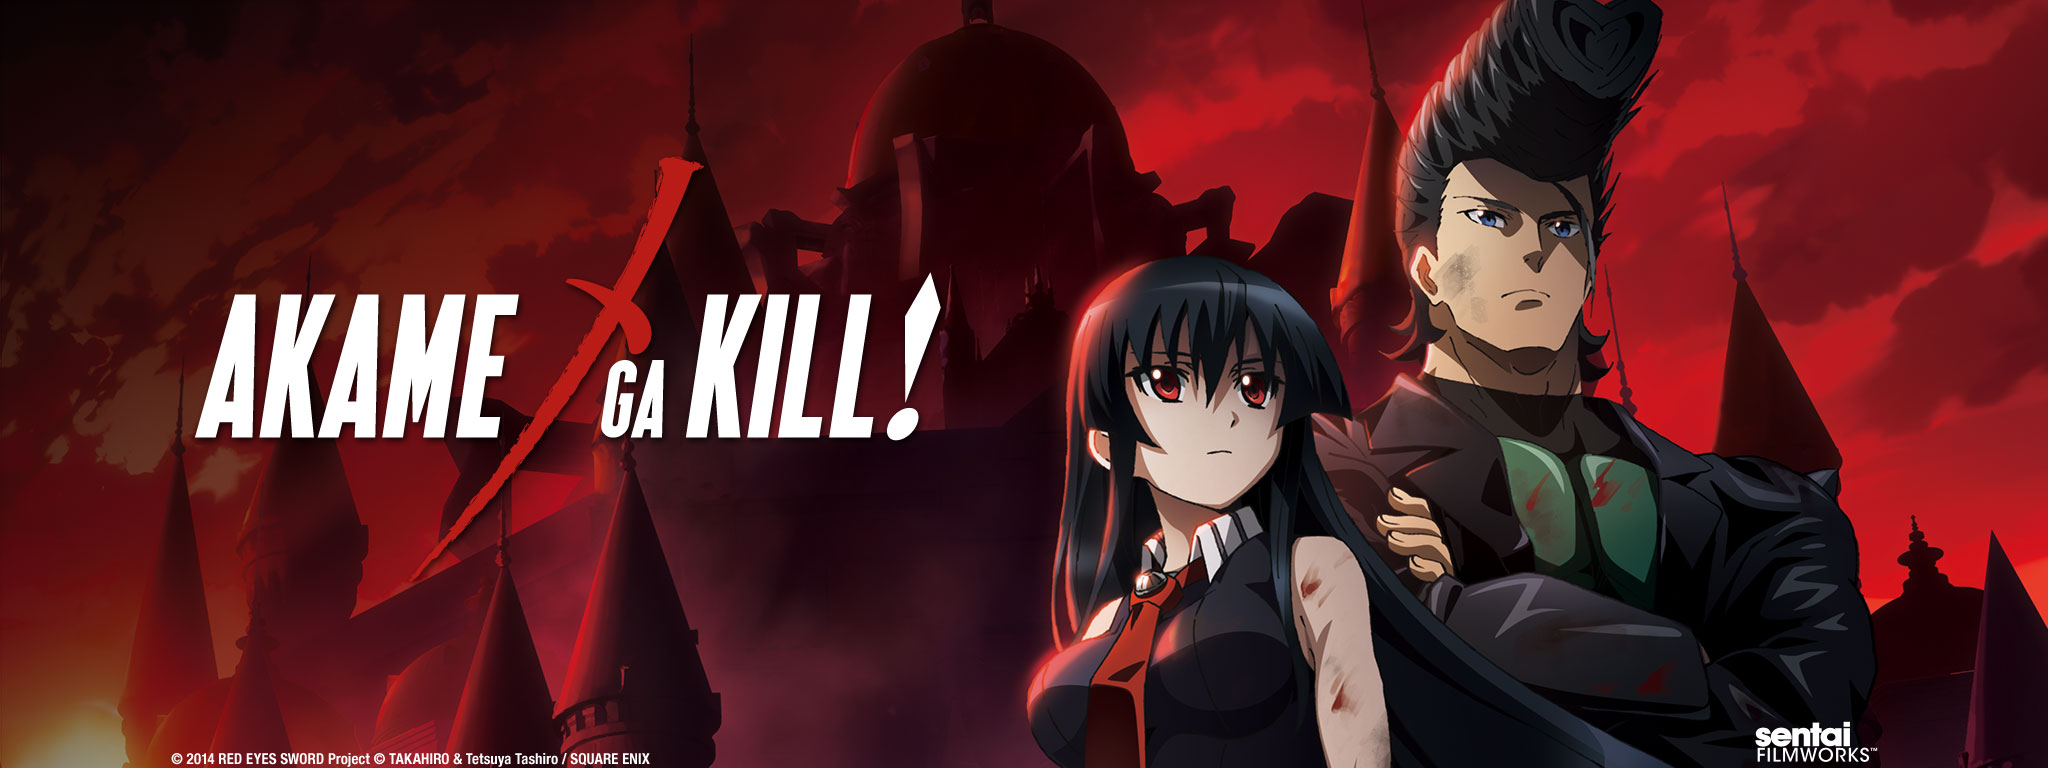 Title Art for Akame ga Kill!